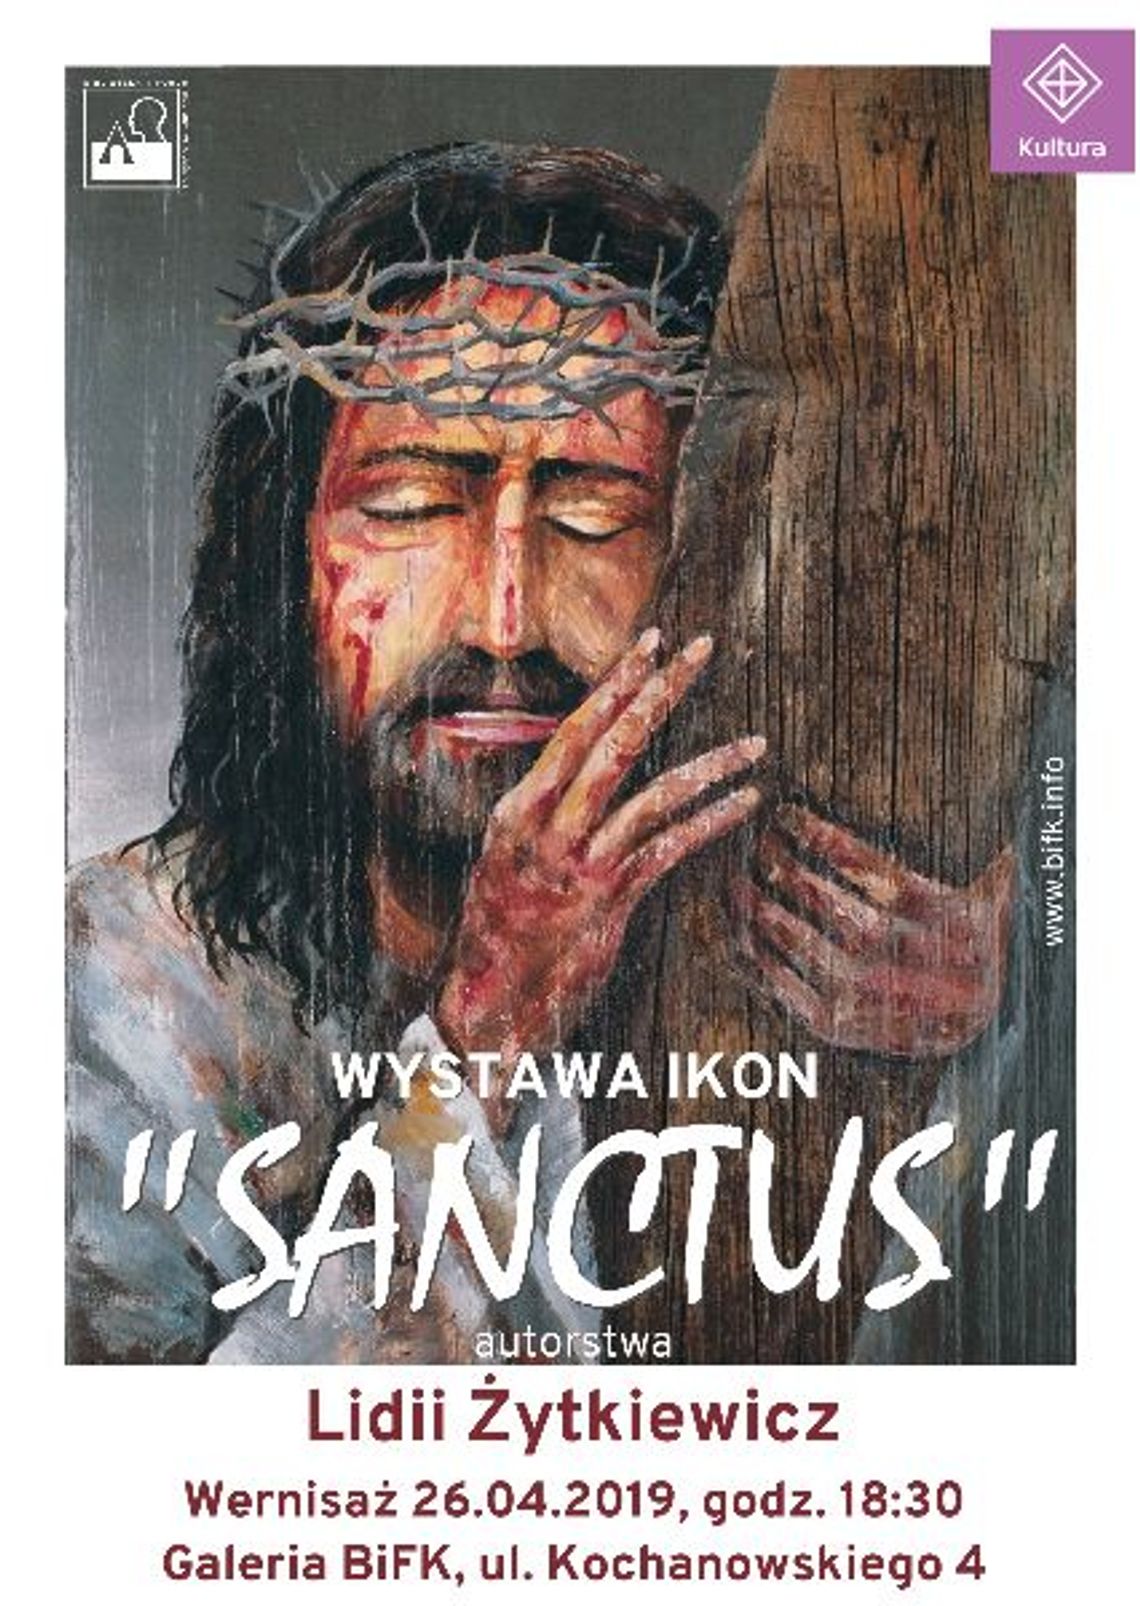 Wystawa ikon "SANCTUS" autorstwa Lidii Żytkiewicz